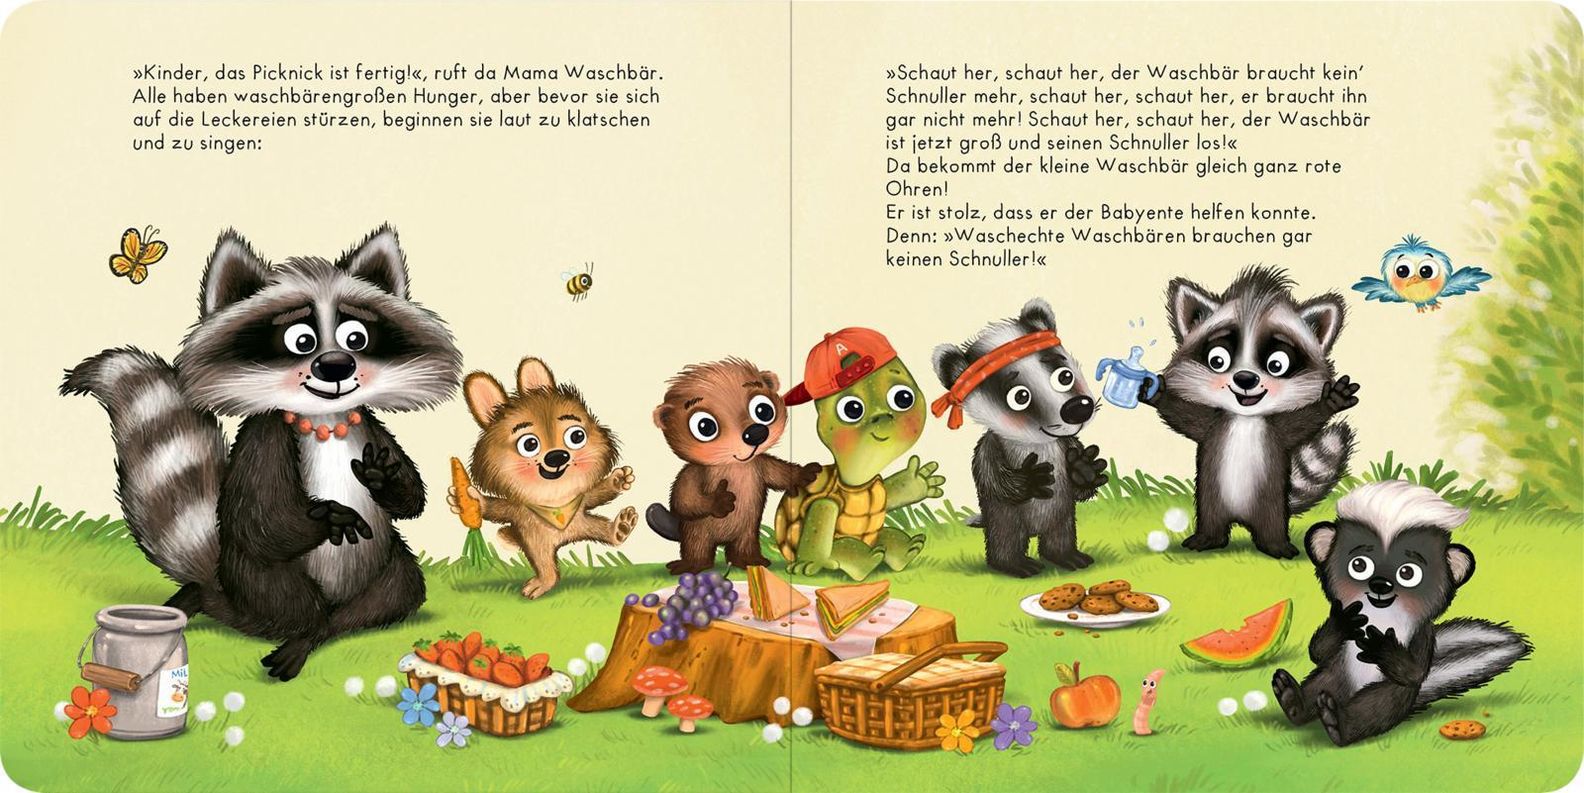 Der Baby Waschbär braucht keinen Schnuller mehr Buch - Weltbild.ch